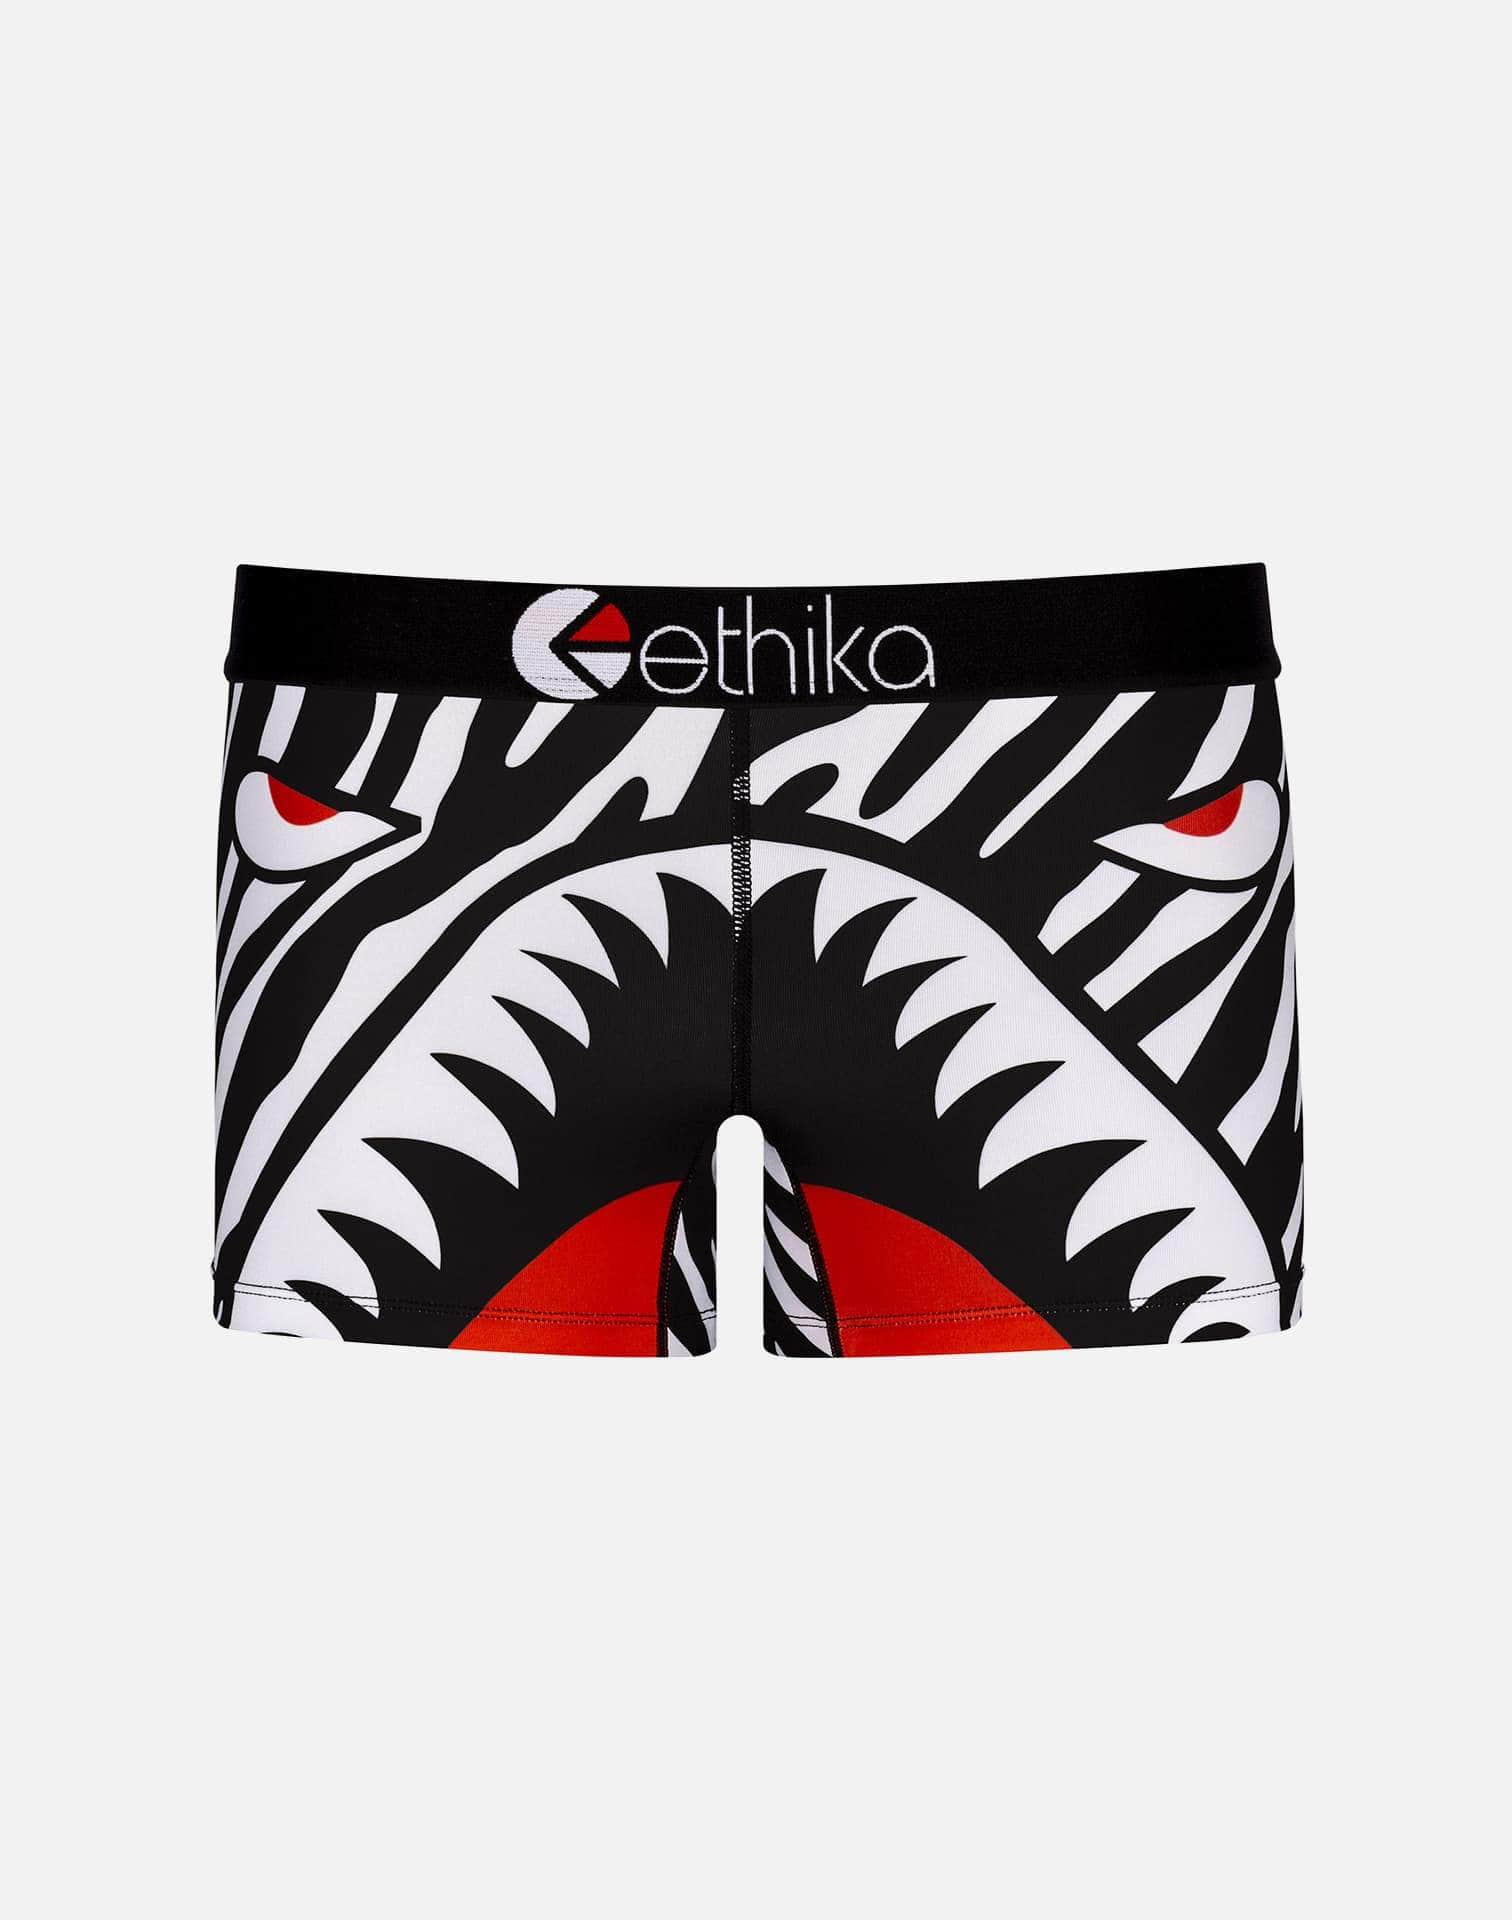 Ethika Women's Zebra Boy Shorts